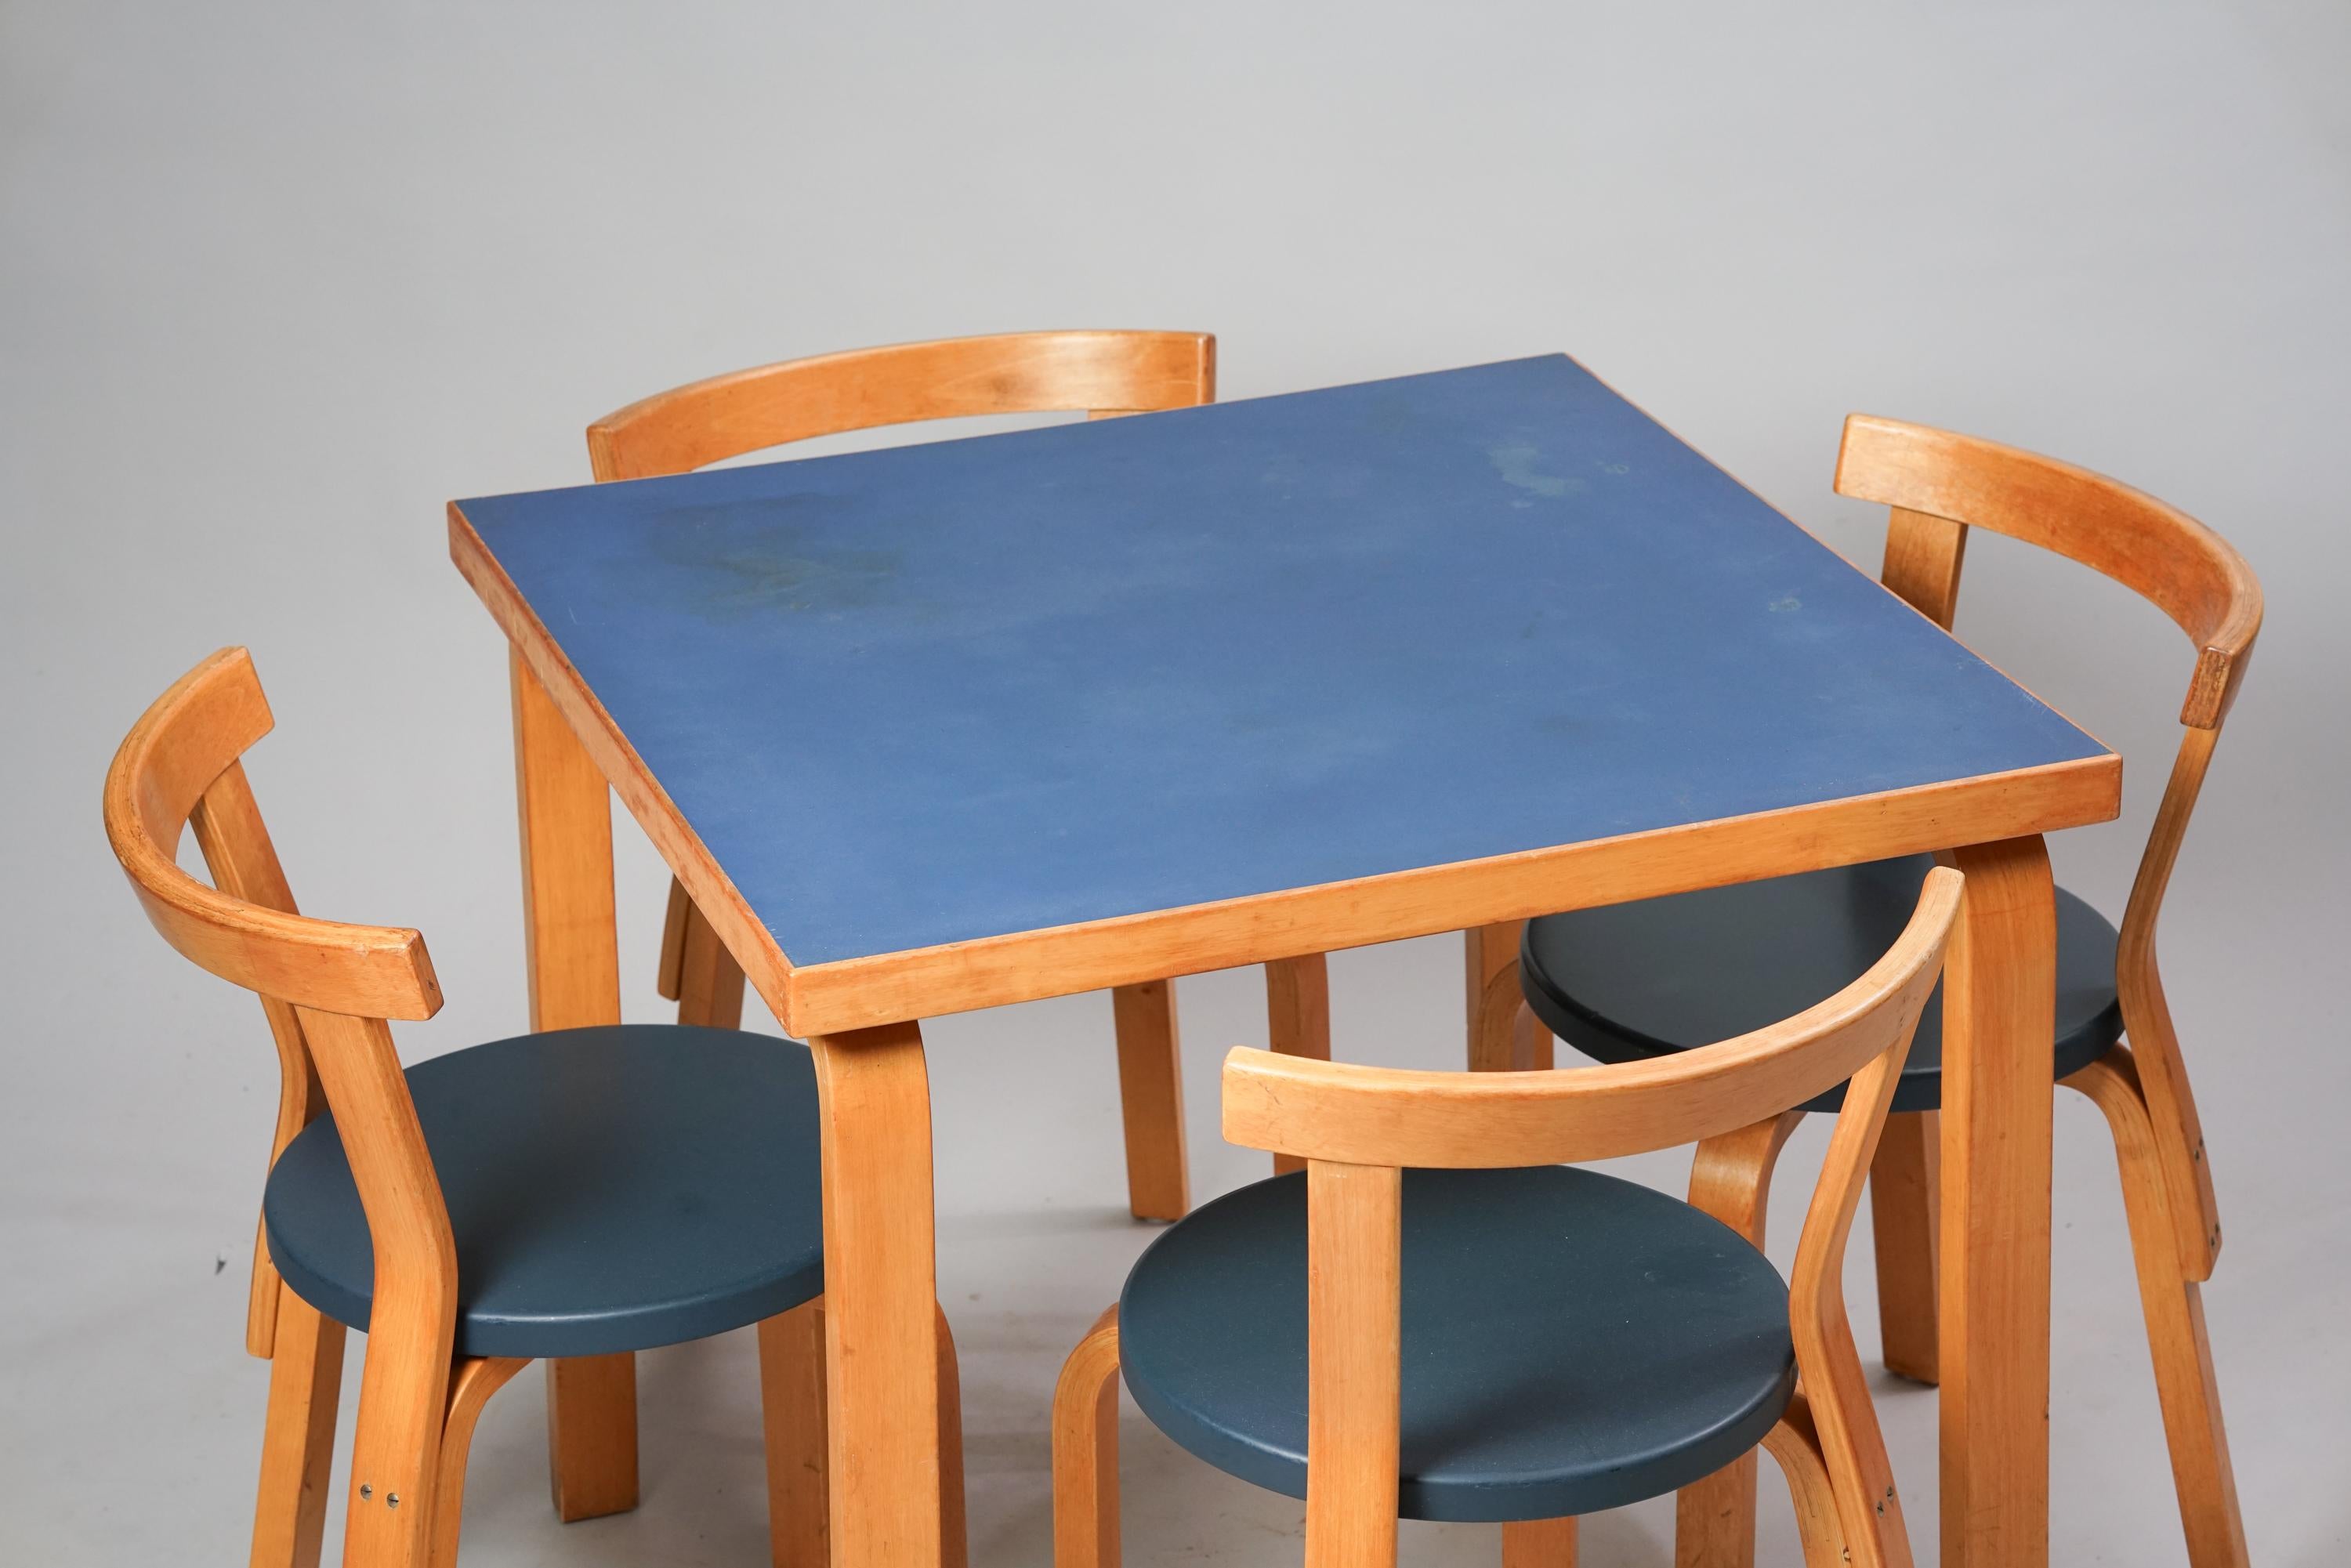 Tisch und vier Stühle Modell 68, entworfen von Alvar Aalto, hergestellt von Oy Huonekalu- ja Rakennustyötehdas Ab, 1950er Jahre. Tischplatte aus Linoleum, Birke, Polsterung der Stühle aus Kunstleder (Kerni). Der Tisch und die Stühle werden als Set